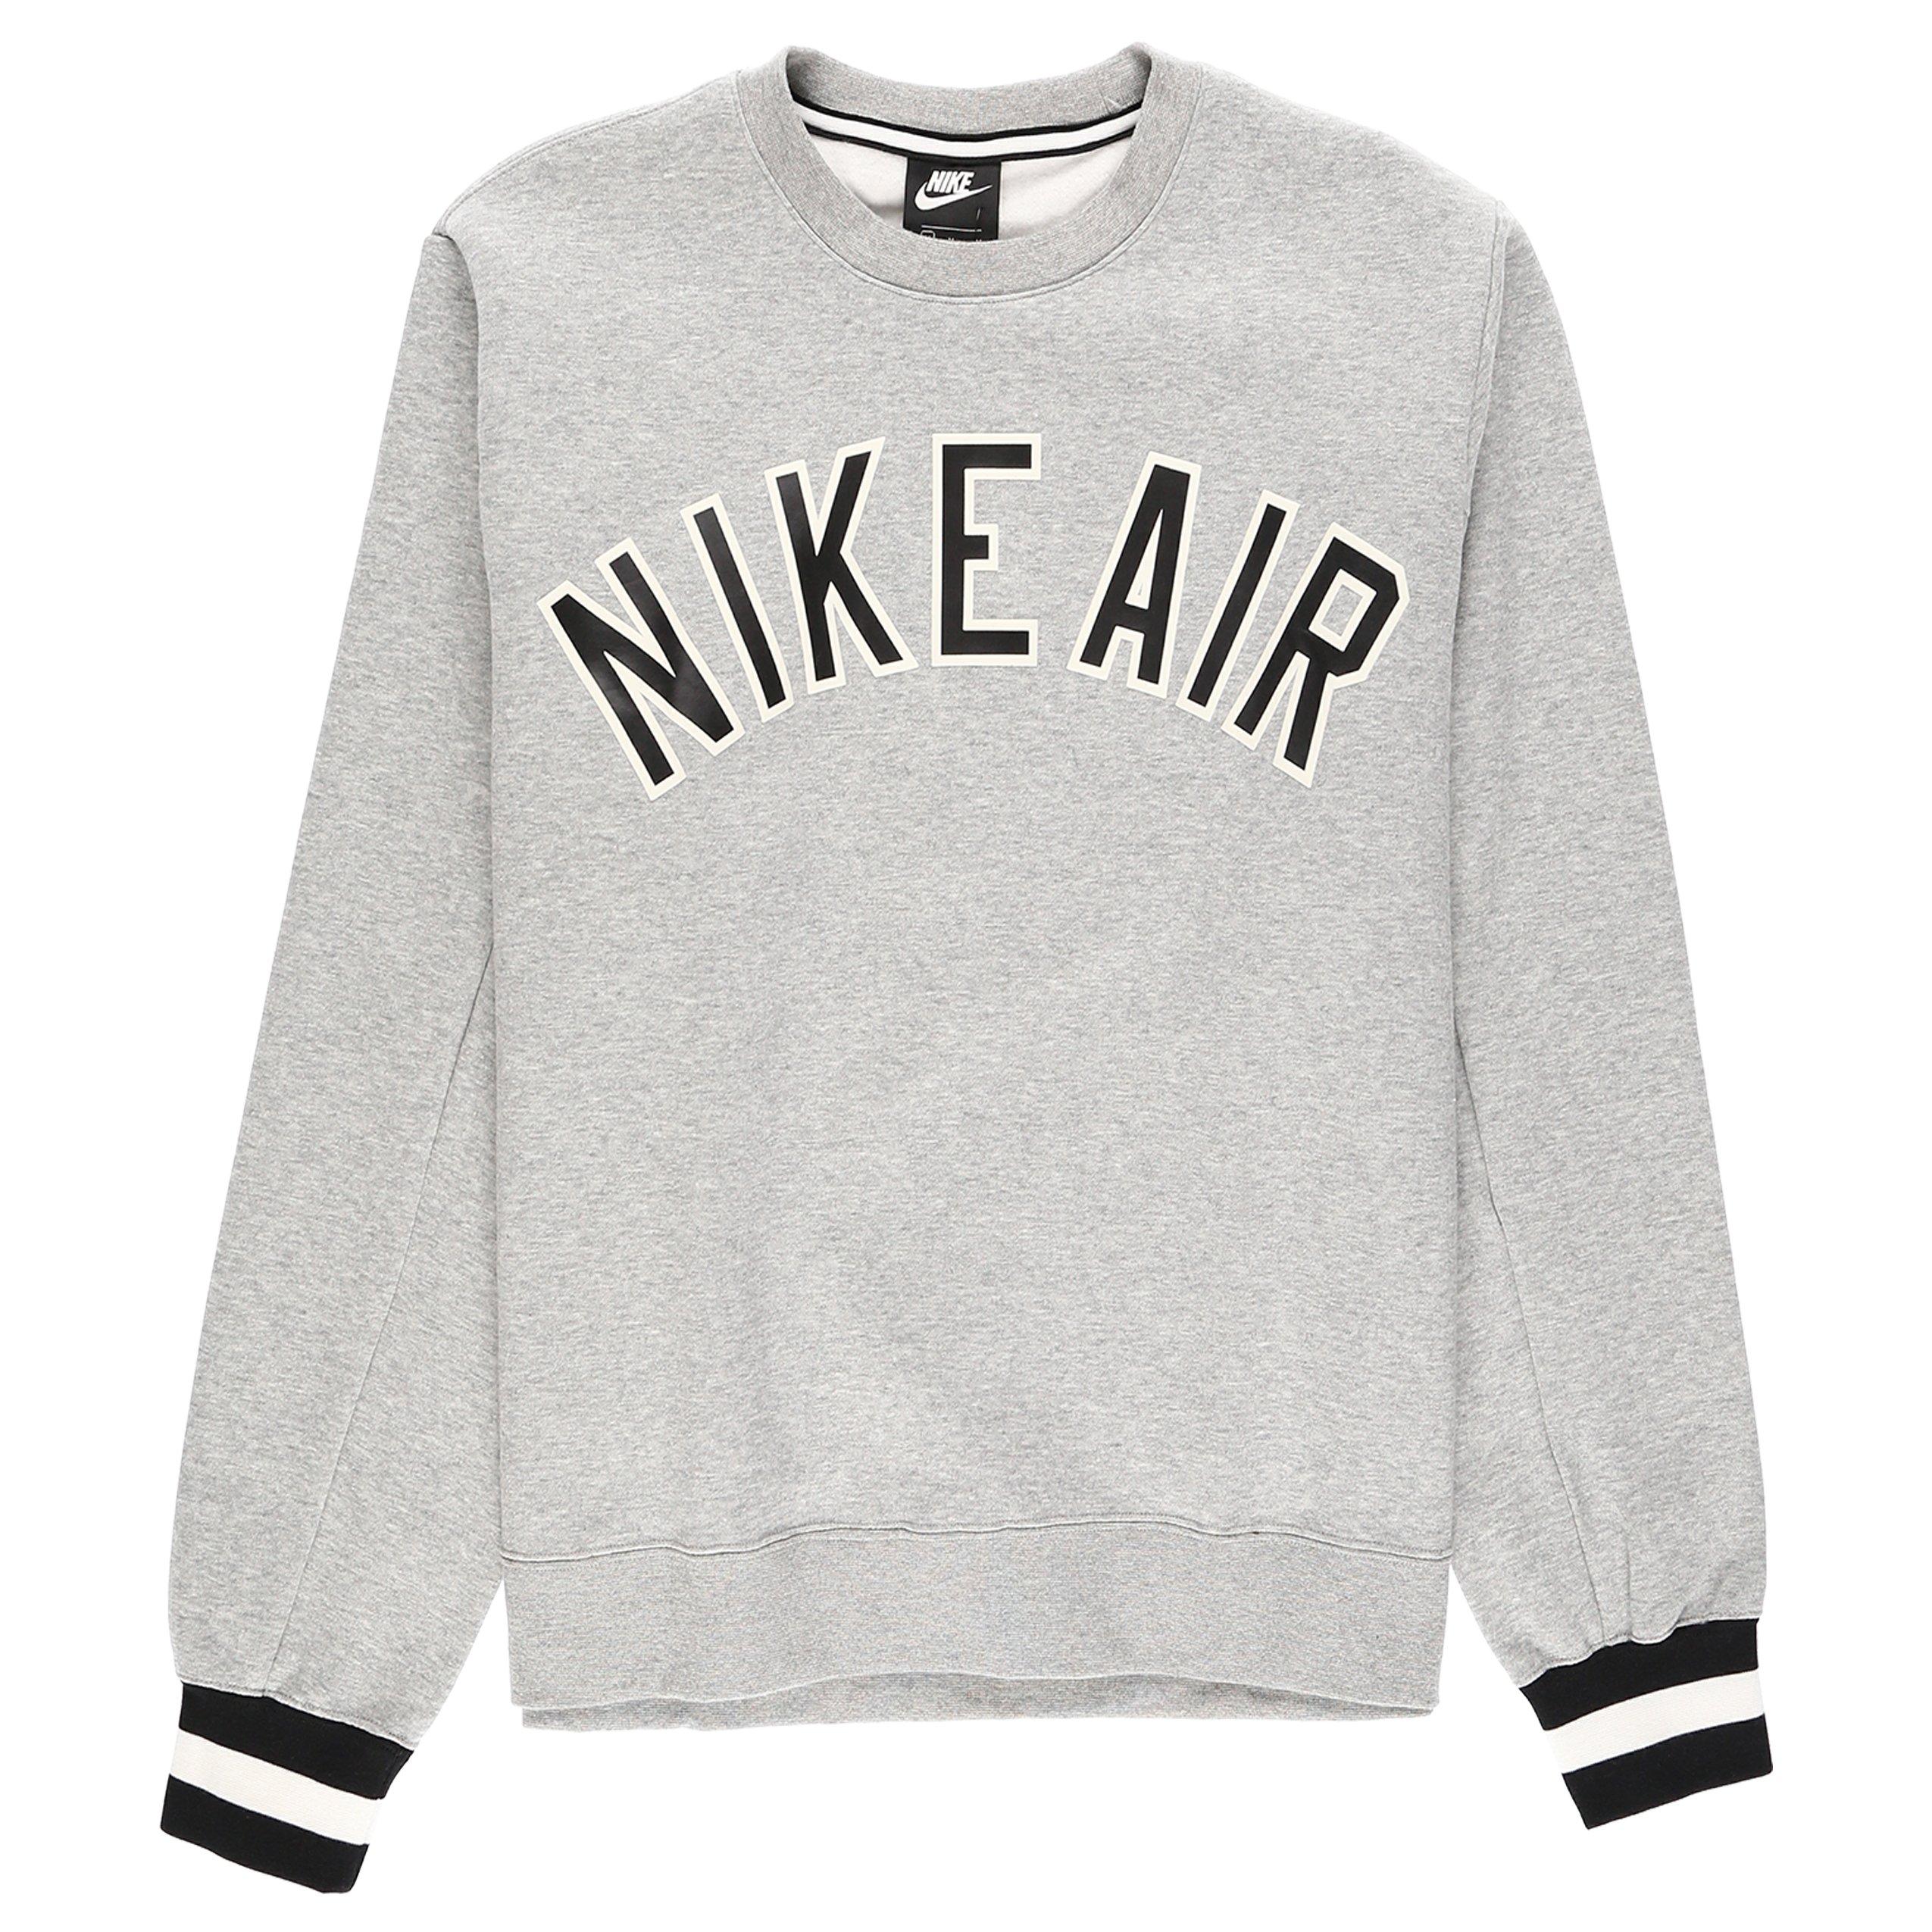 Nike Air Crewneck Sweatshirt in Gray for Men - Lyst